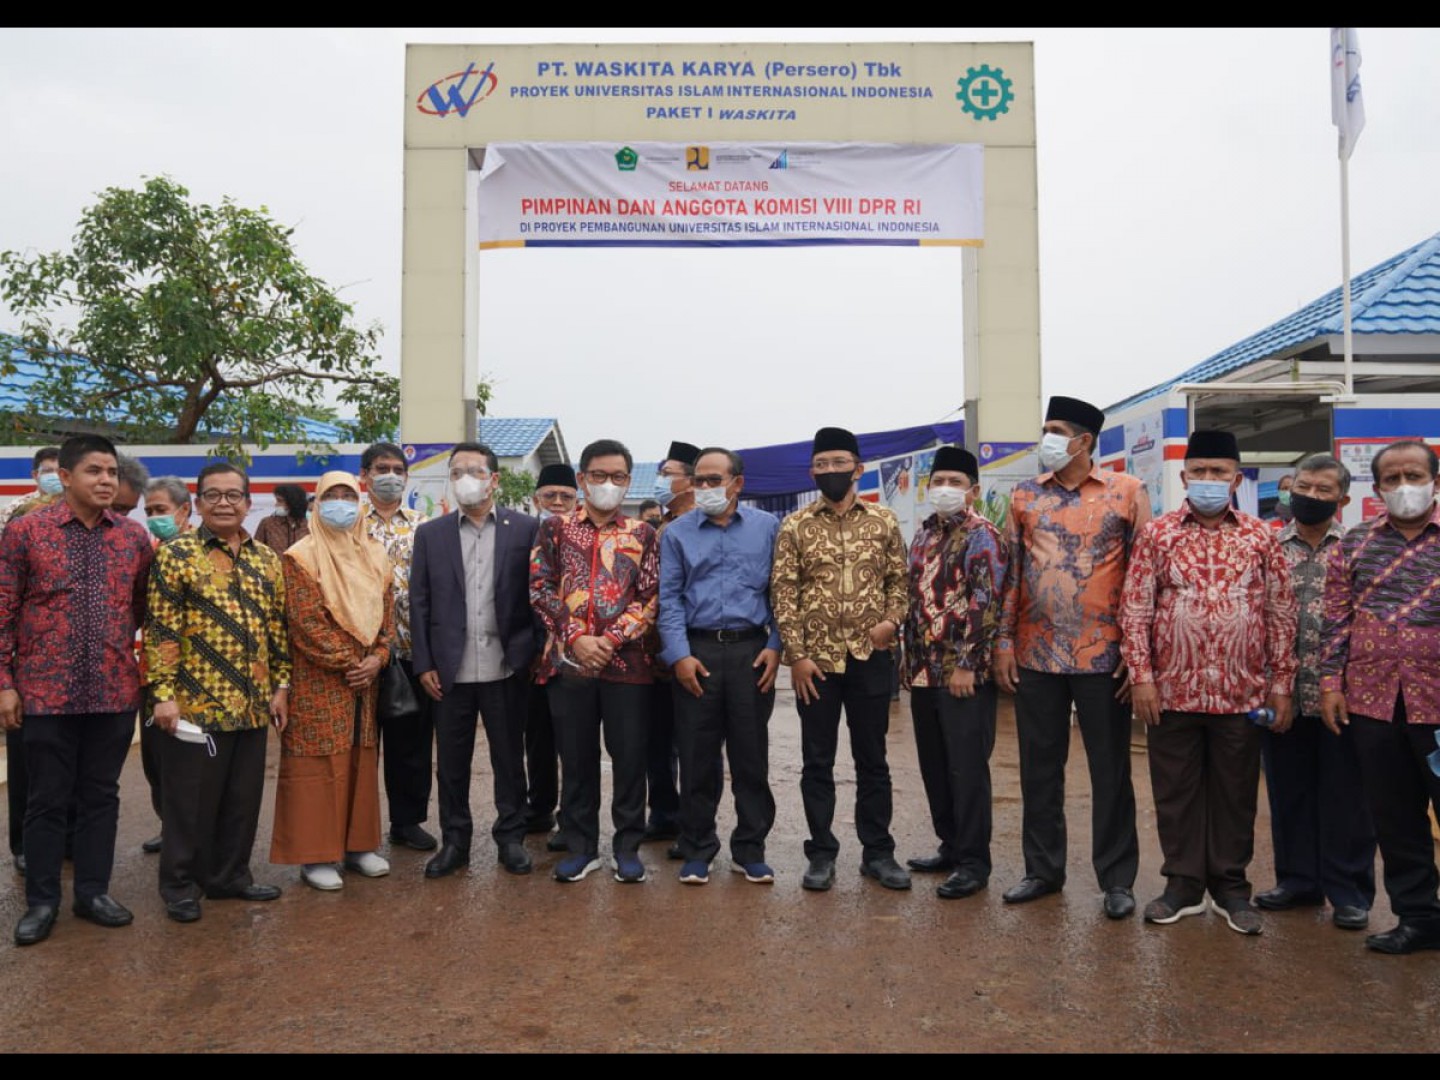 DPR: UIII Tingkatkan Pengakuan Masyarakat Akademik Internasional Atas Peran Islam Di Indonesia